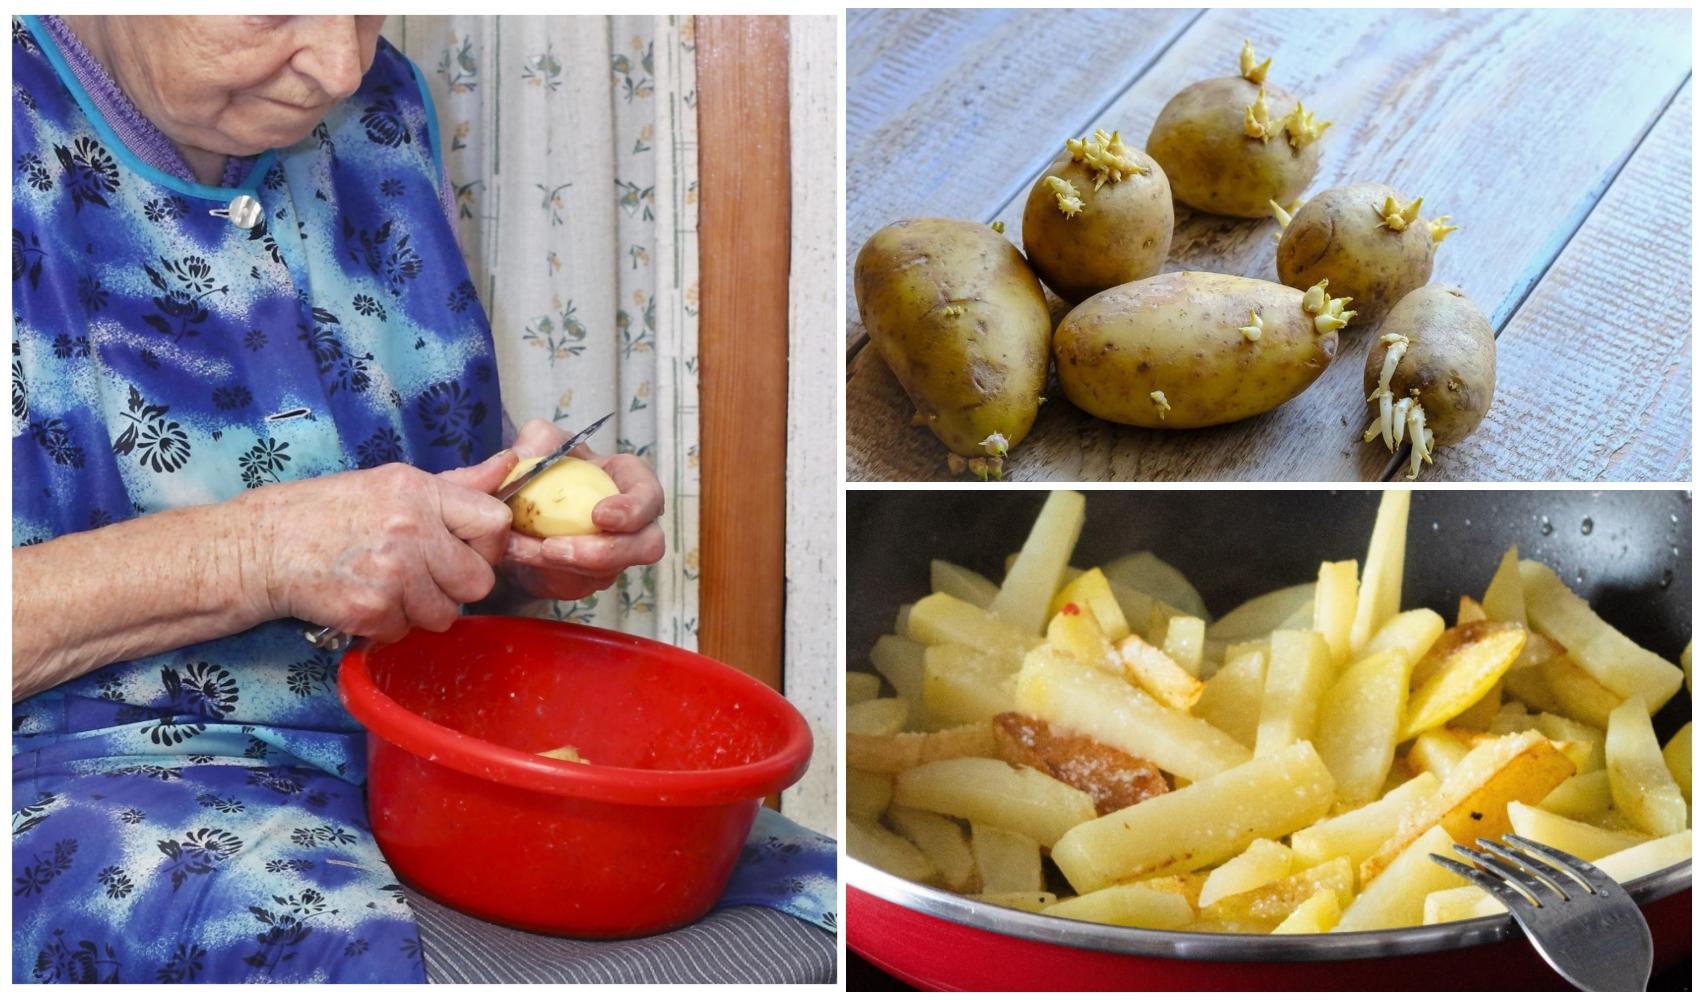 Ce se întâmplă dacă mănânci cartofi încolțiți și ce efecte pot apărea. Ce trebuie să faci dacă ai astfel de tuberculi